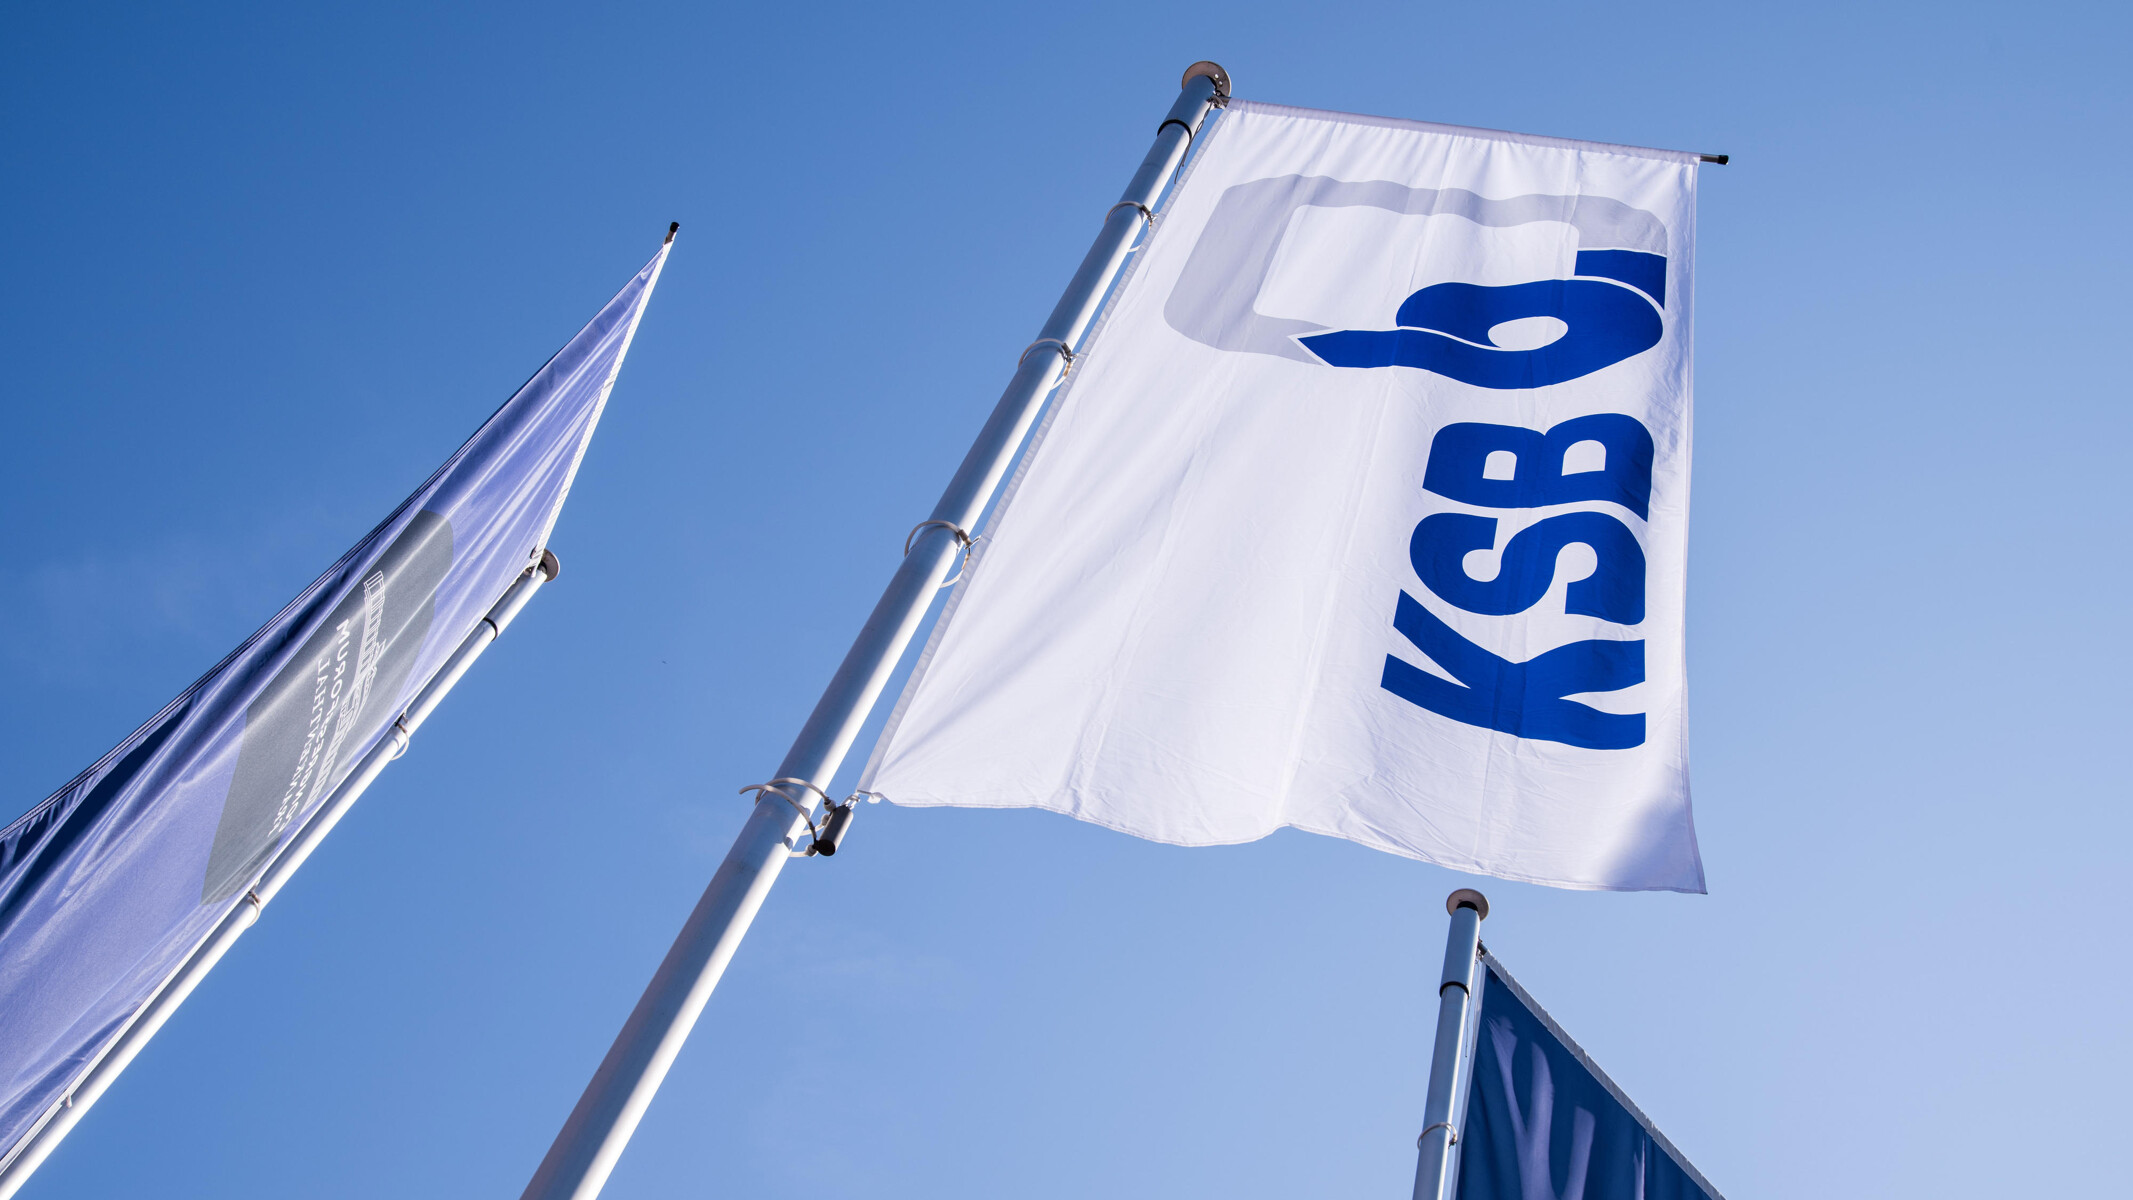 KSB drapeaux contre un ciel bleu